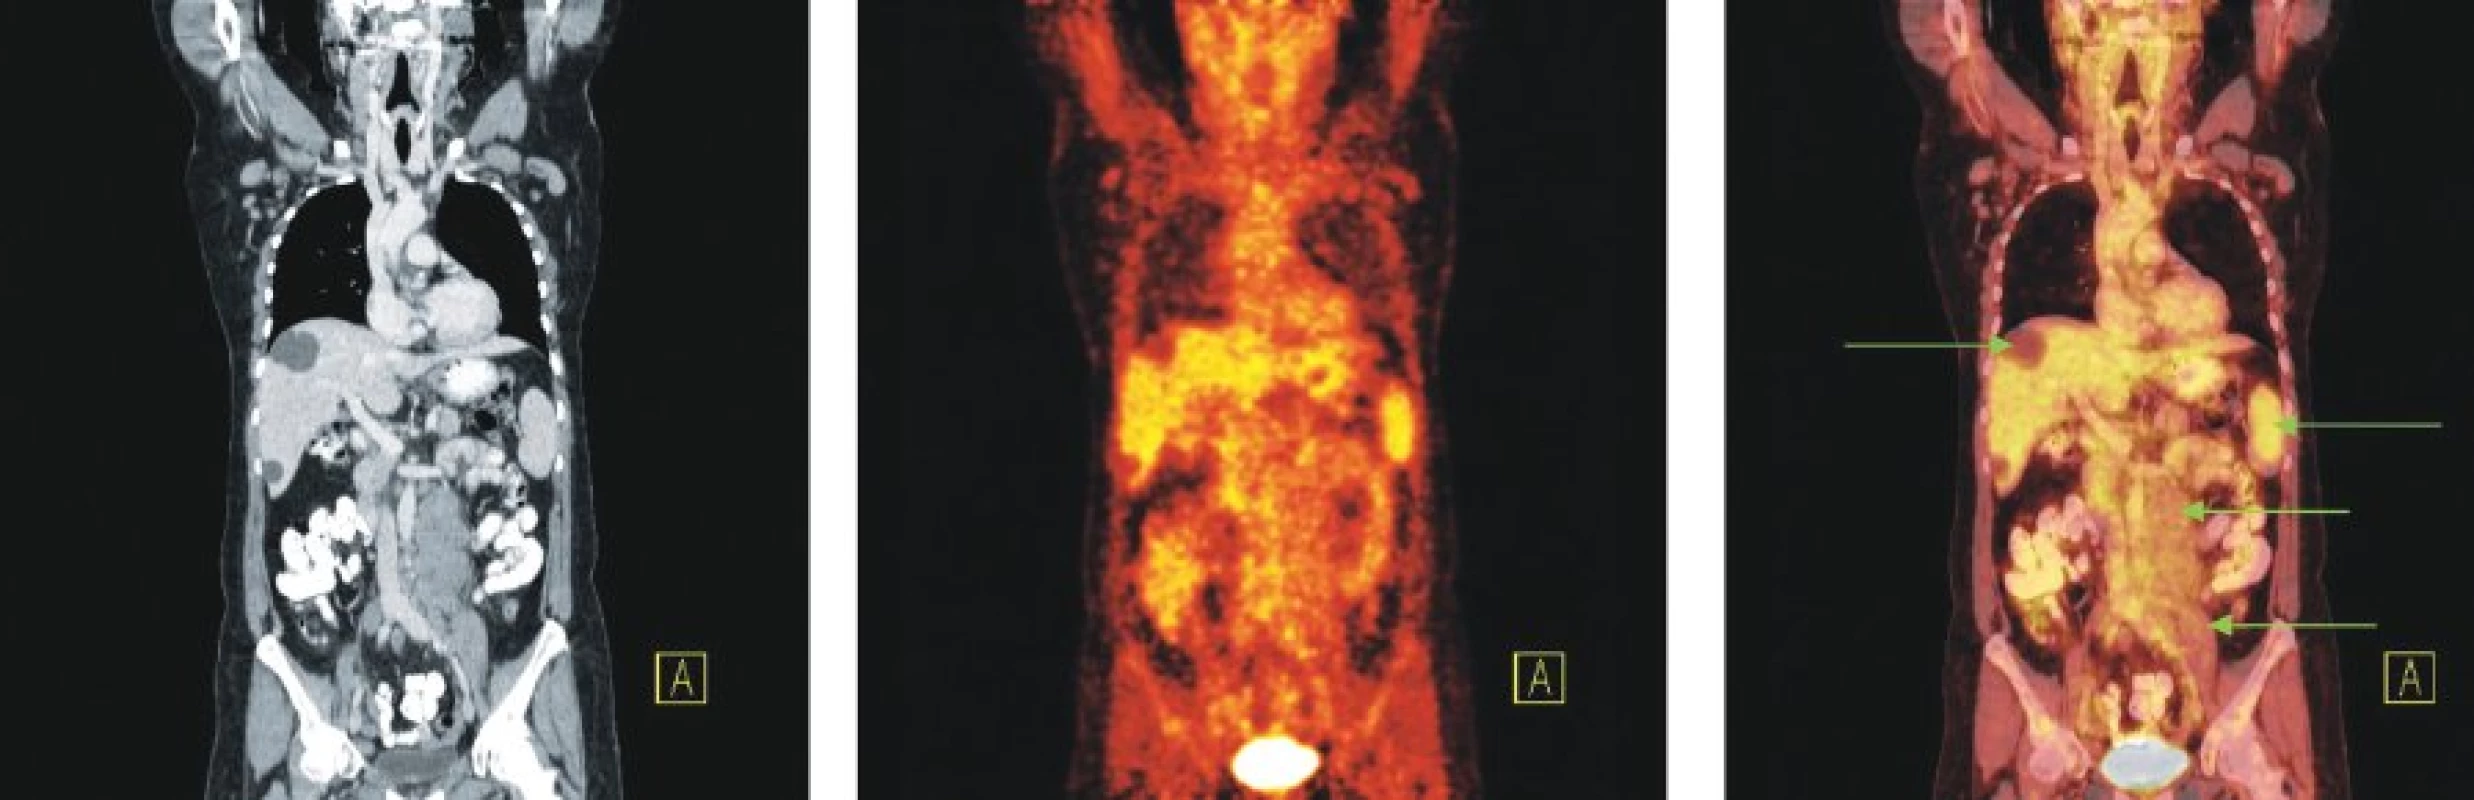 Snímky výpočetní tomografie (CT), pozitronové emisní tomografie (PET) a PET/CT u nemocné s nově zjištěnou diagnózou chronické Blymfocytární leukemie a genetickou abnormalitou 11q-. Na CT lze diferencovat zvětšené lymfatické uzliny na krku a v tříslech, paraaortálně vlevo pod odstupem renální tepny jsou až pakety uzlin. Žádná z uvedených lymfatických uzlin ani uzlinové pakety nevykazují zvýšenou konzumpci glukózy. Tři hypodenzní ložiska charakteru cyst v játrech. Relativně vyšší akumulace FDG v nezvětšené slezině.